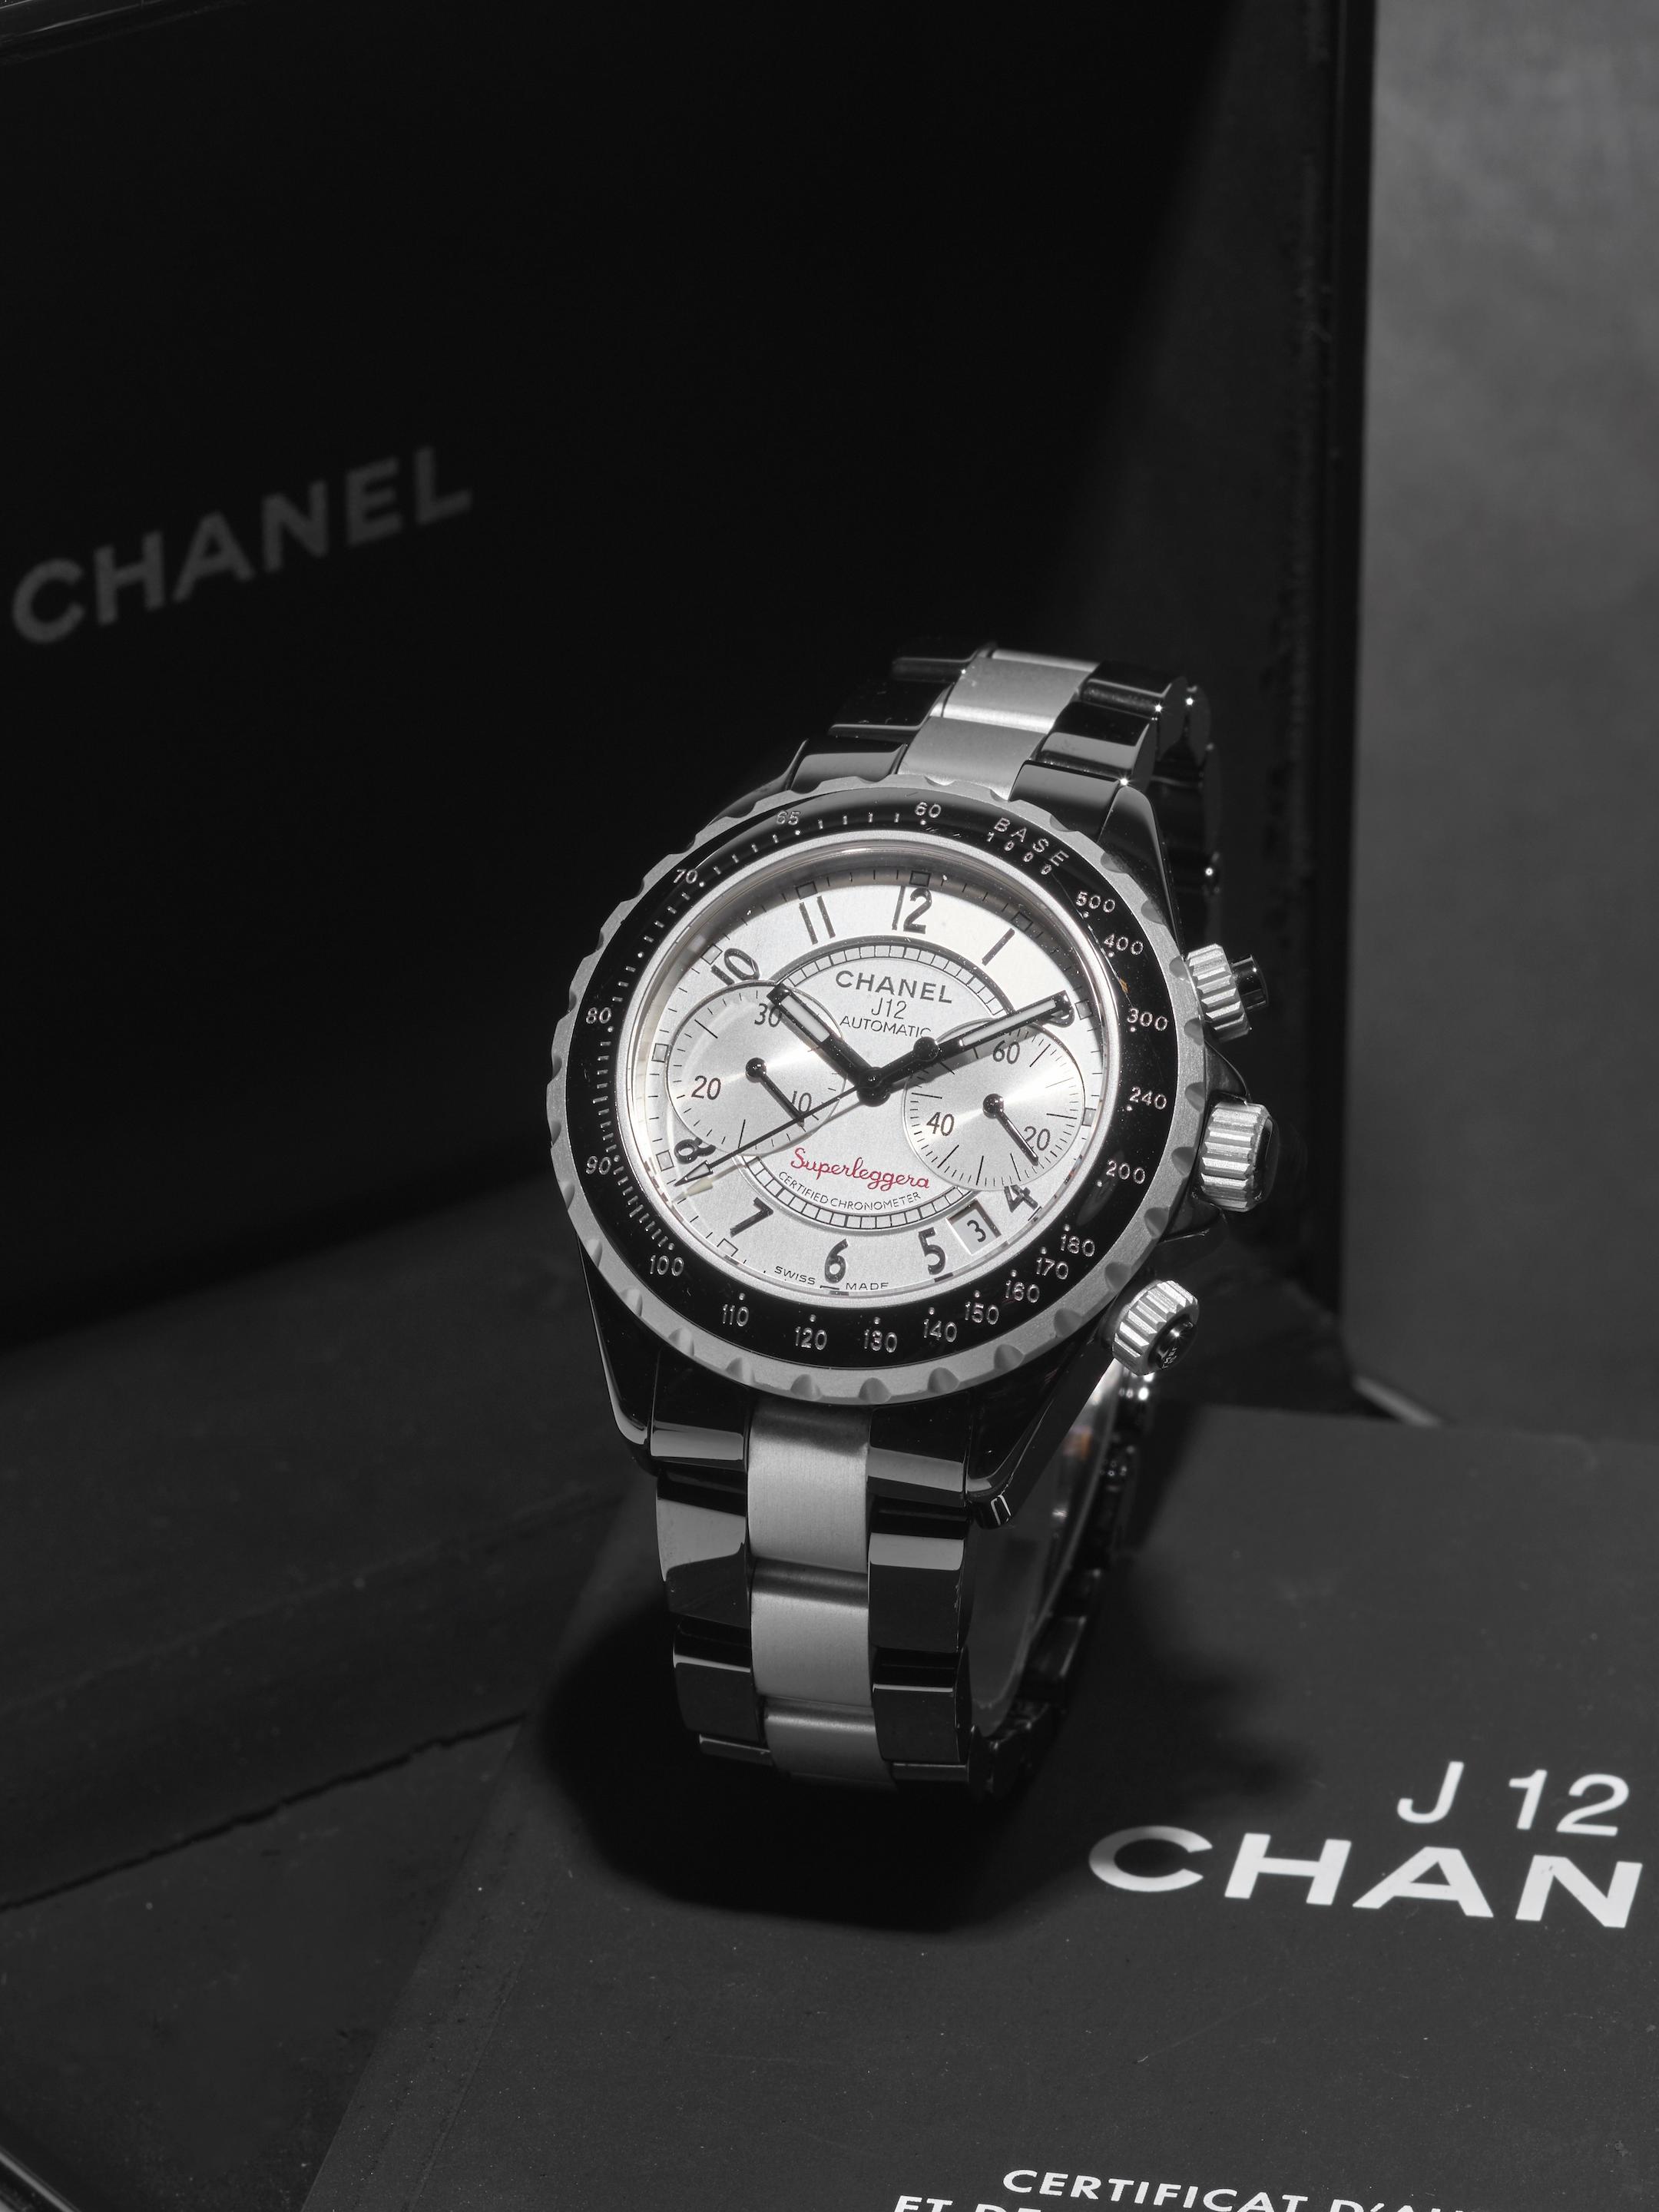 H2008 Chanel J 12 - White White Gold